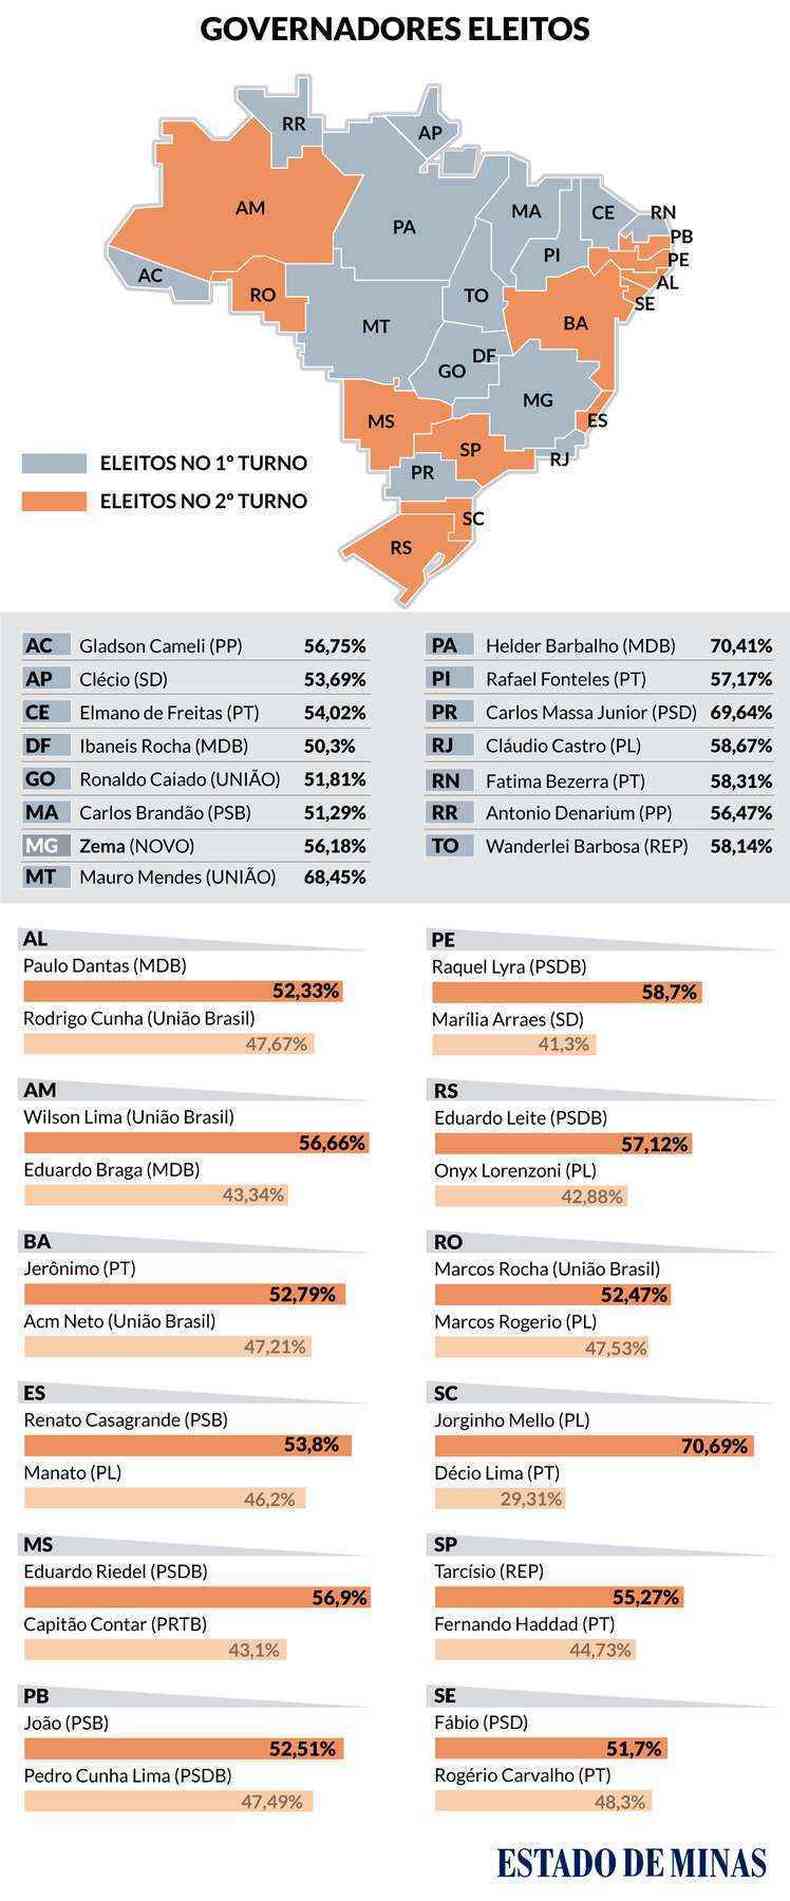 Governadores eleitos em 27 unidades federativas do Brasil